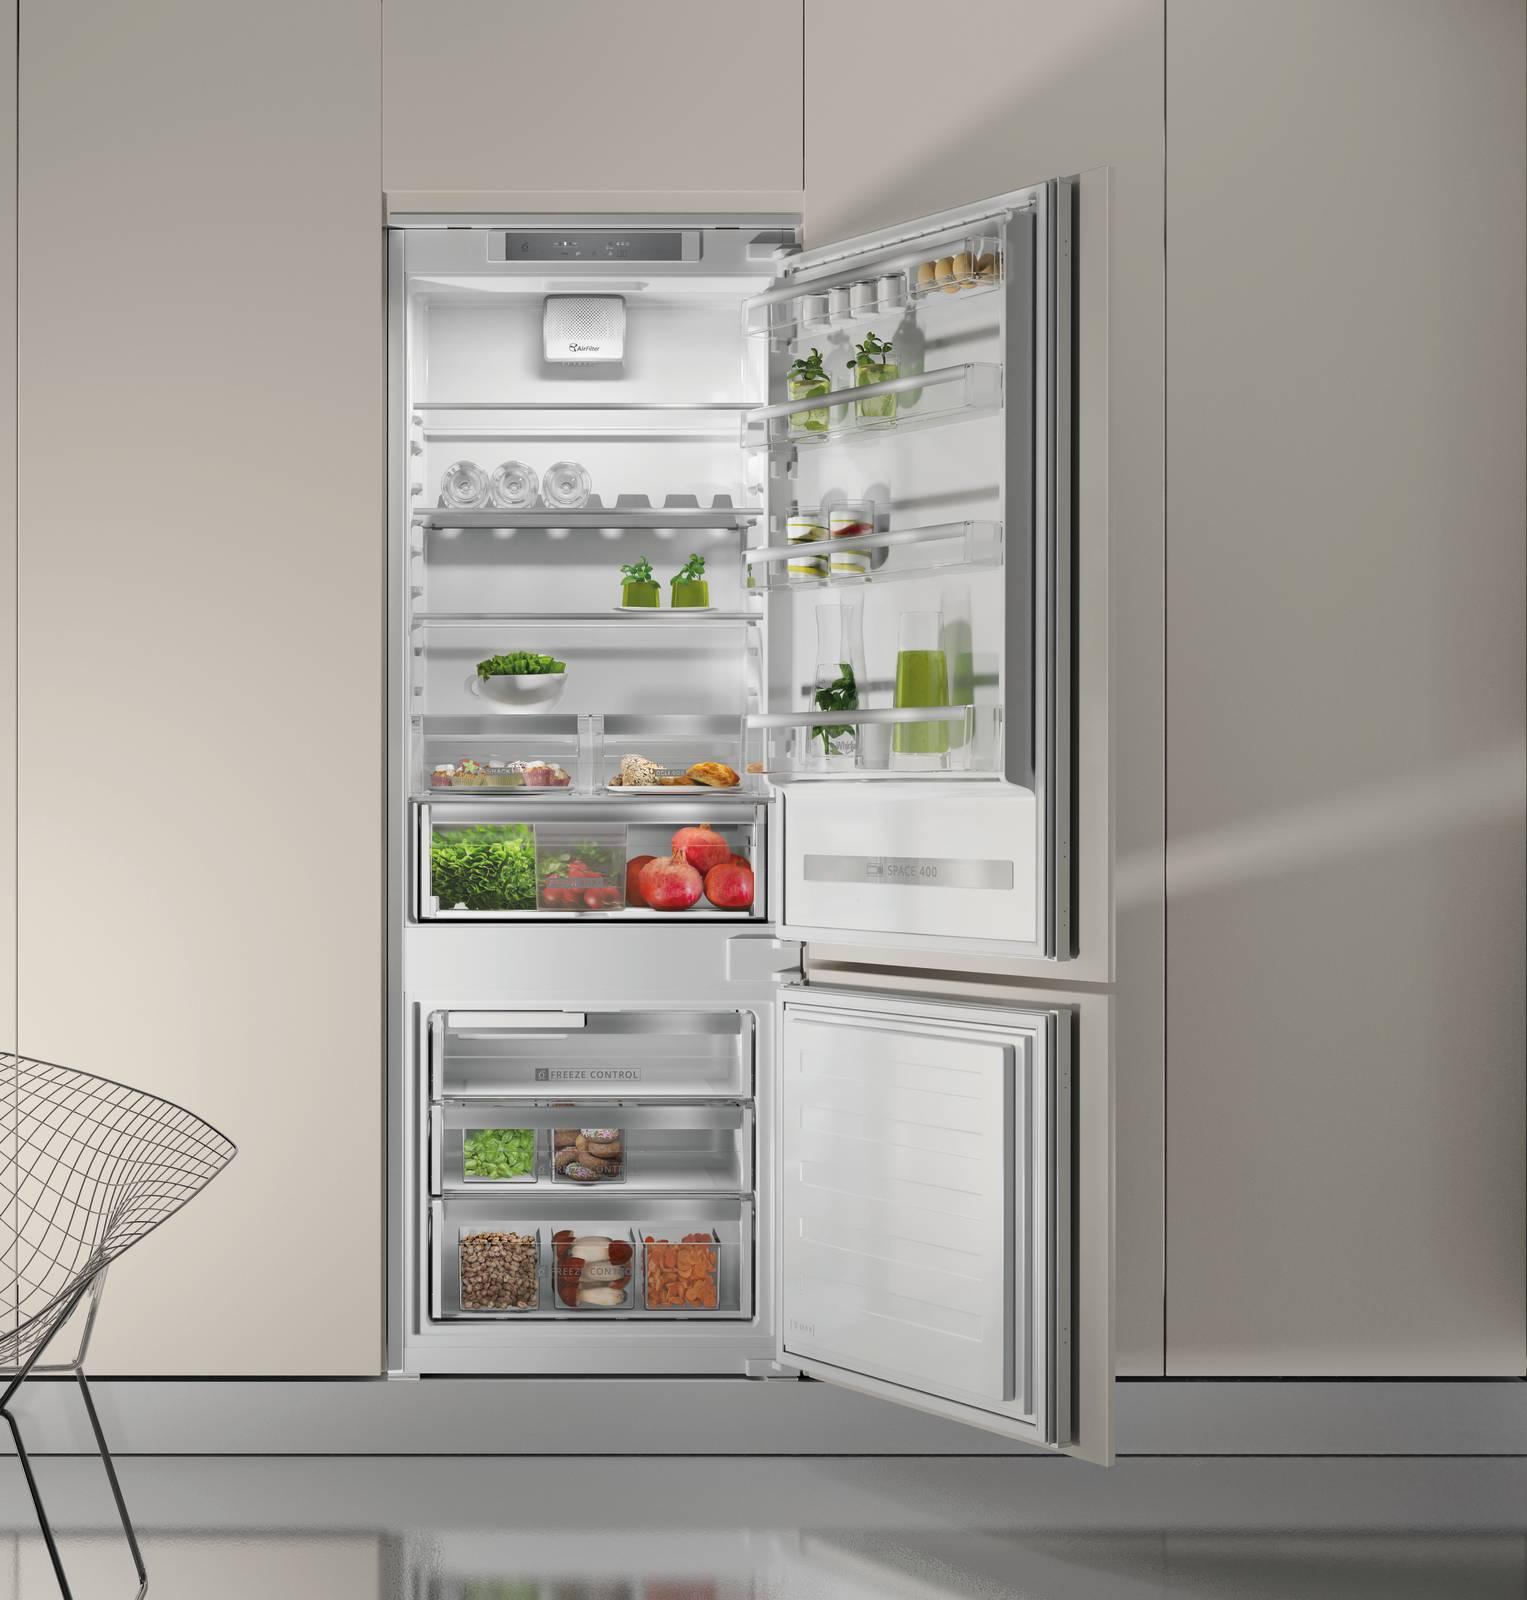 I vantaggi dei frigoriferi con freezer in basso